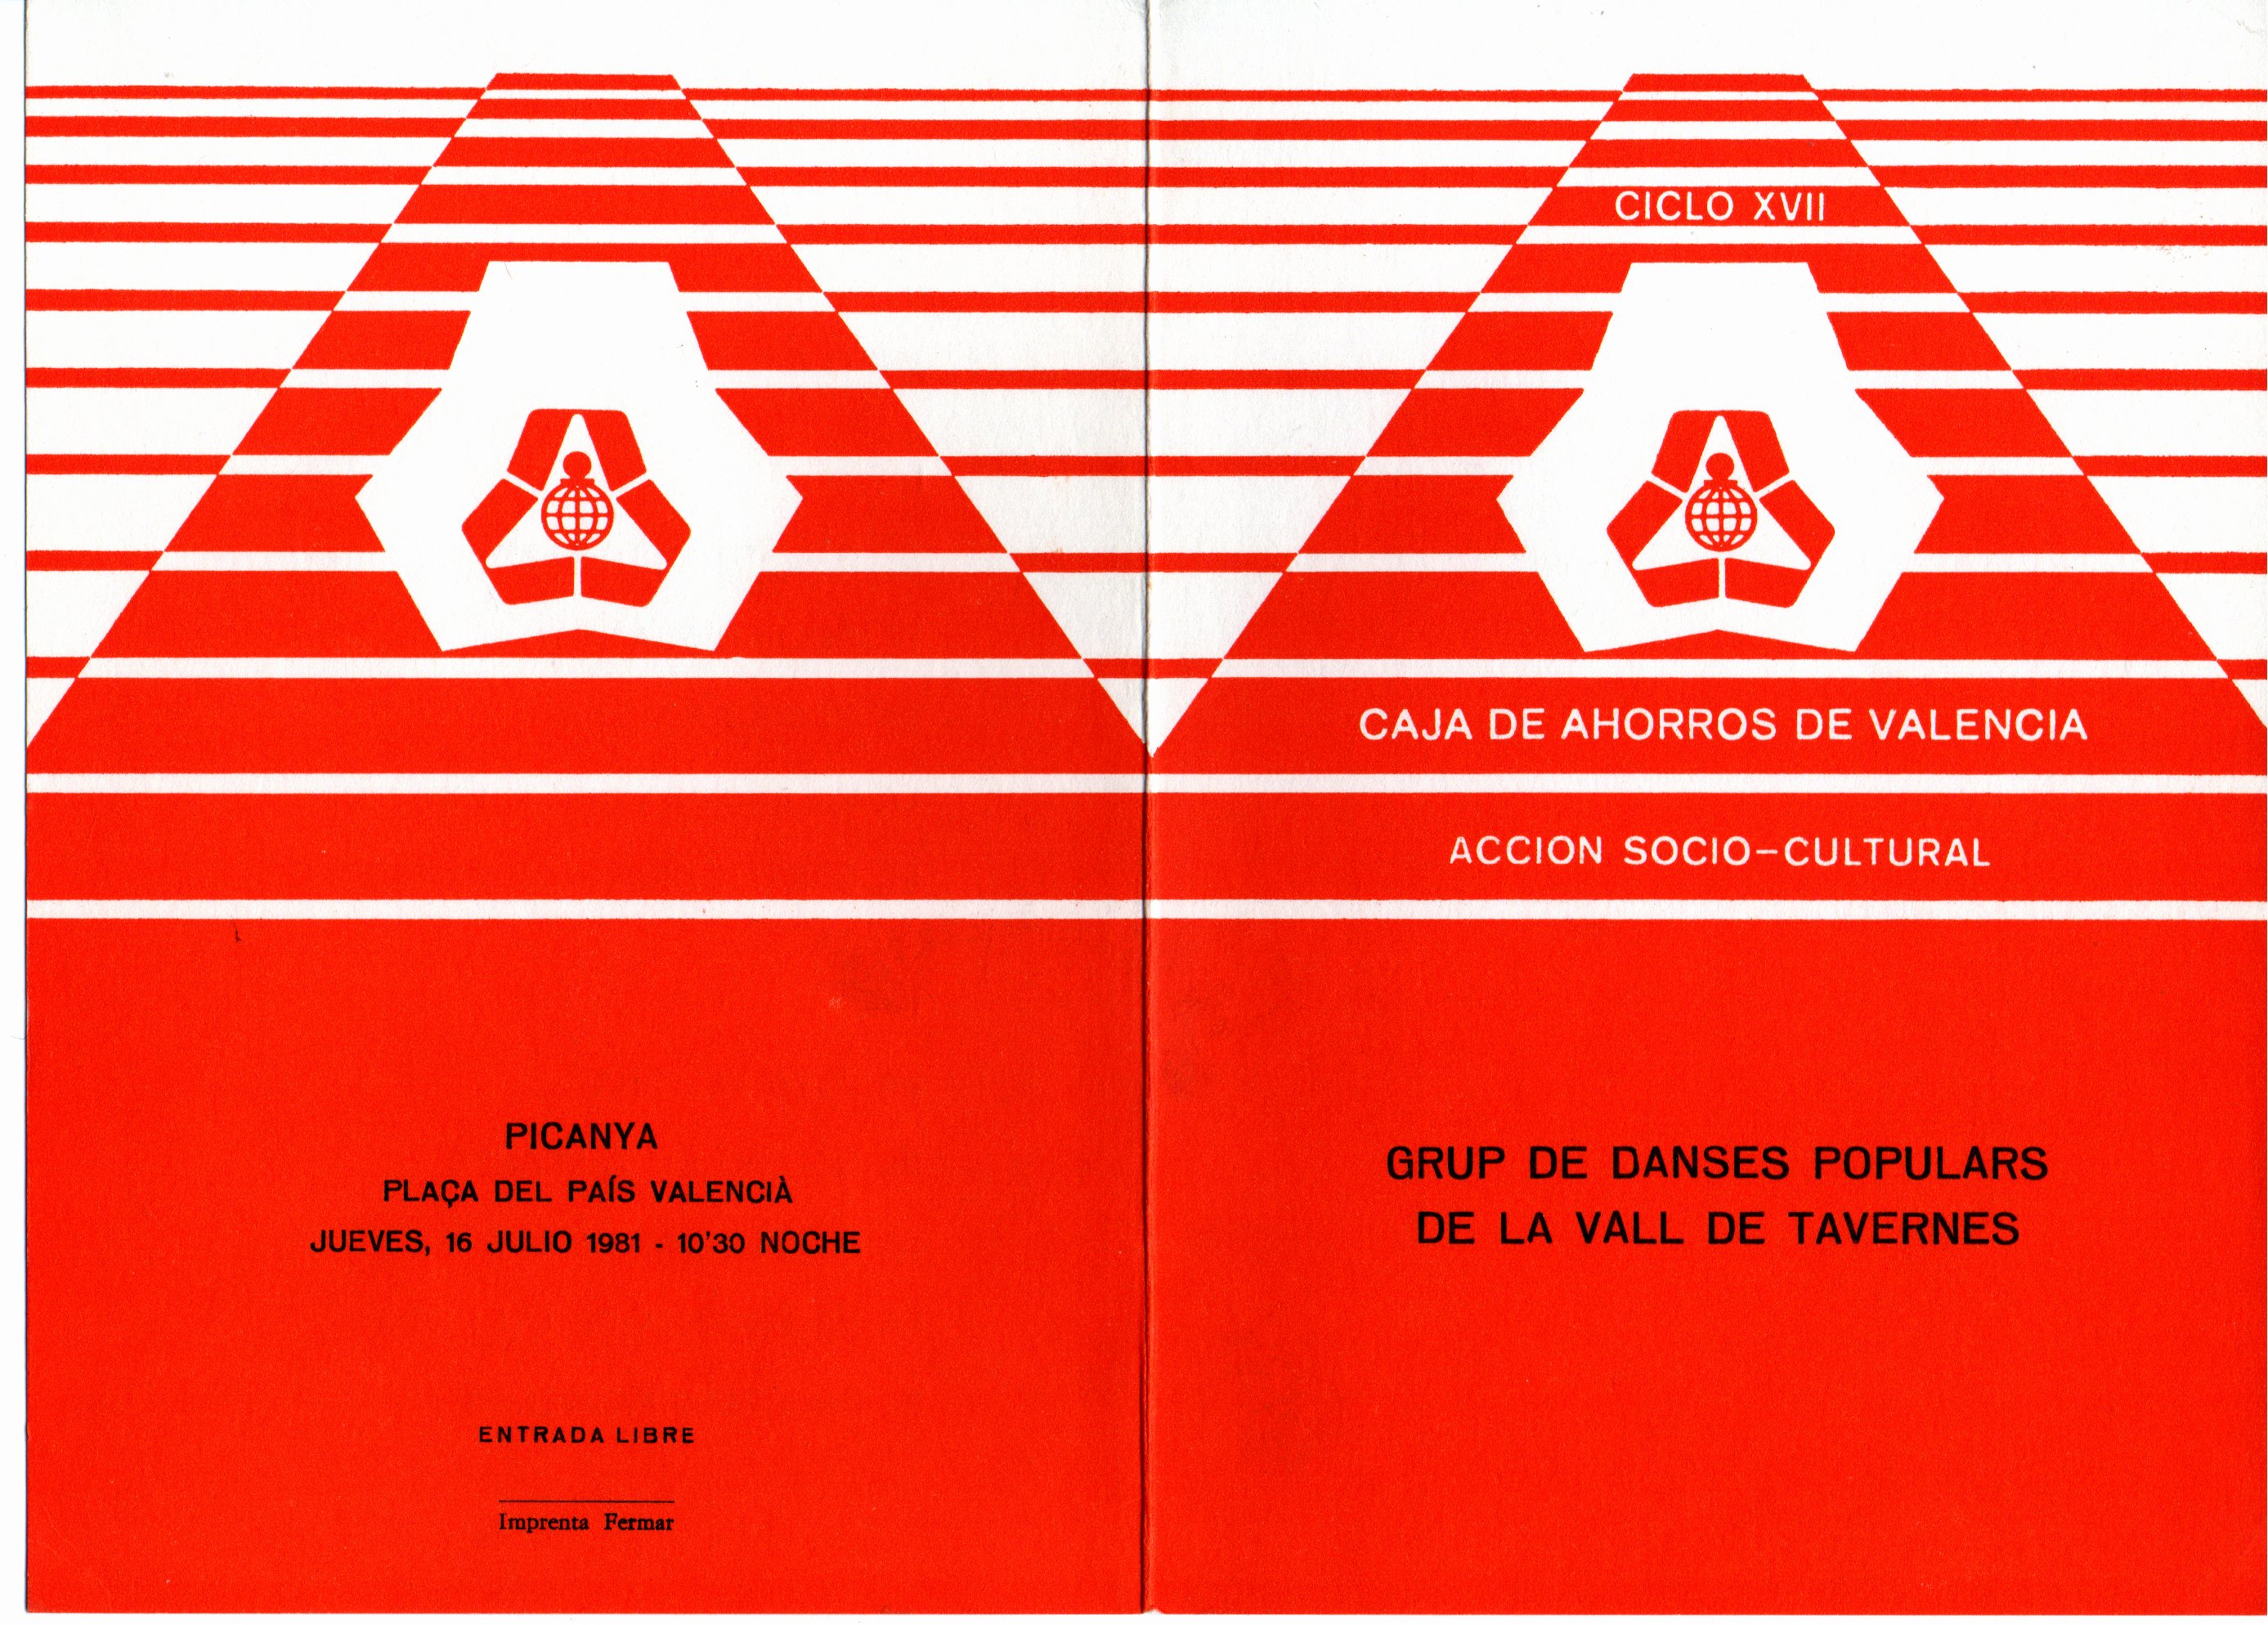 CEL-DO-A0473 - Caja de Ahorros de Valencia | Centre d'Estudis Picanya